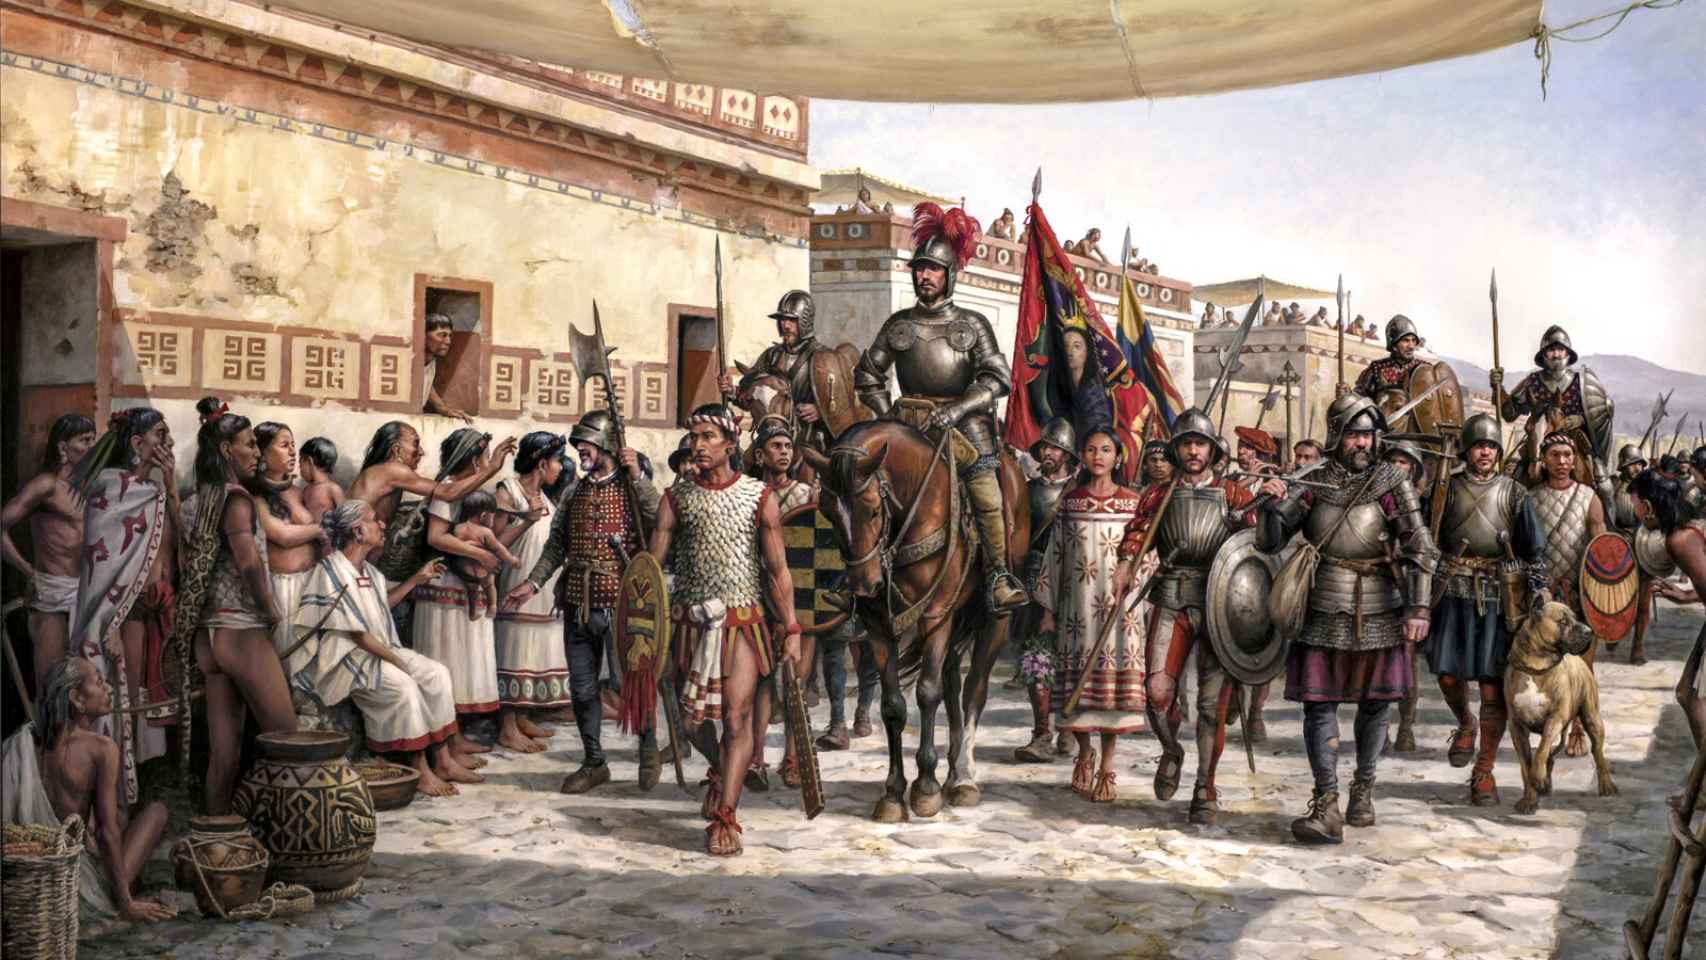 La conquista de México, como no se había contado: el libro imprescindible  de la gesta de Hernán Cortés